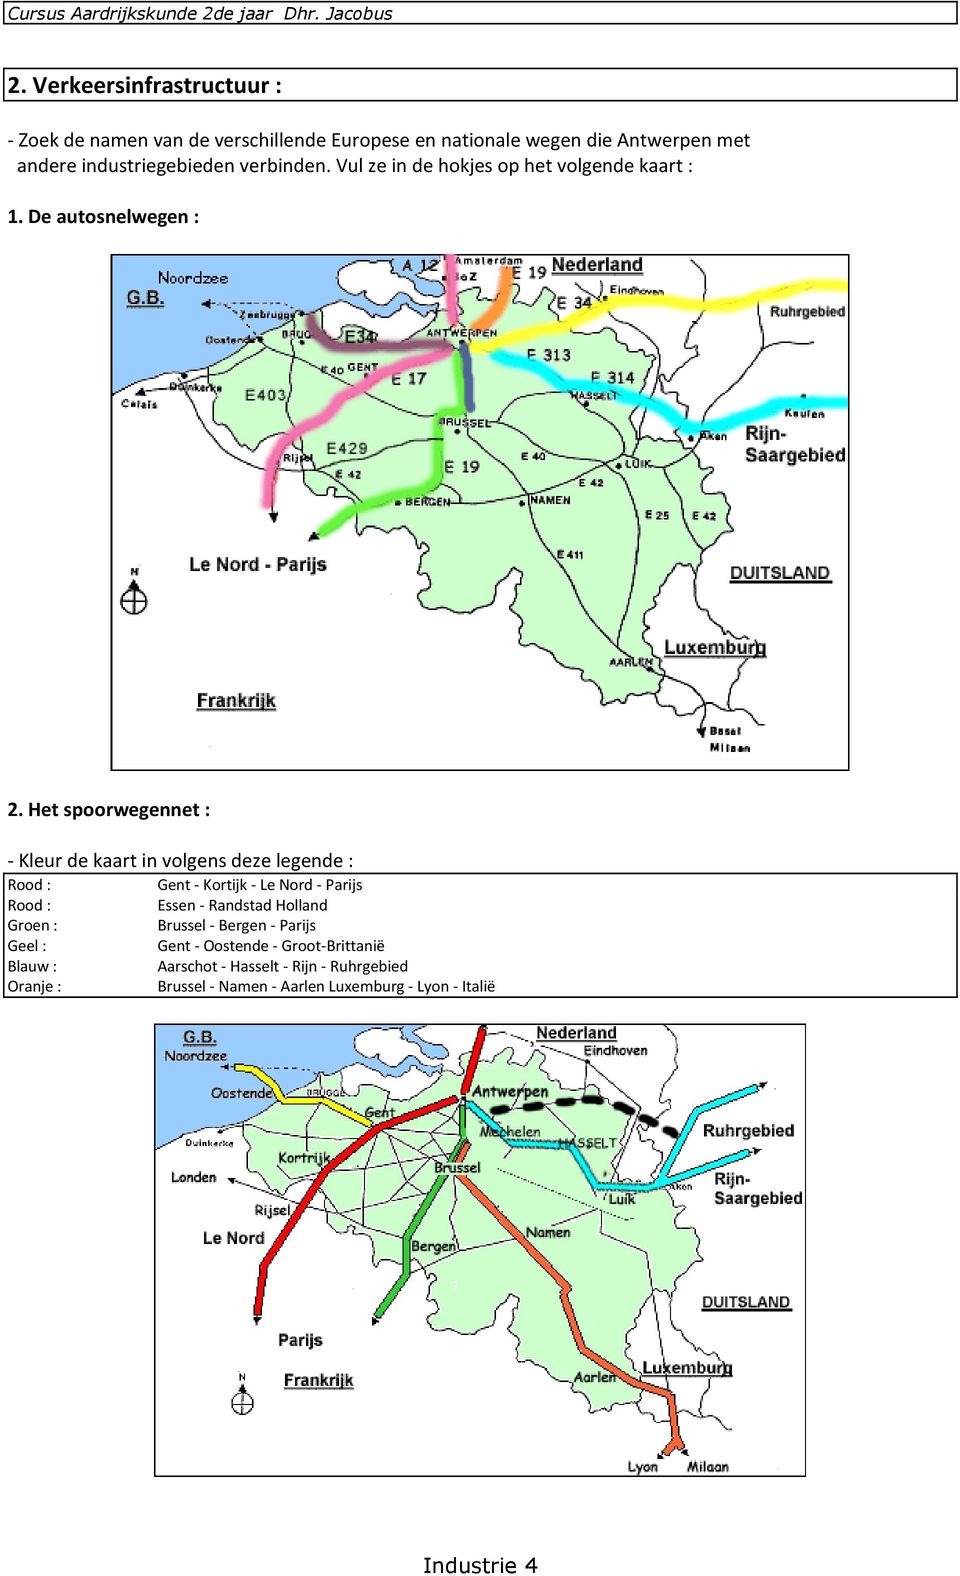 Het spoorwegennet : - Kleur de kaart in volgens deze legende : Rood : Gent - Kortijk - Le Nord - Parijs Rood : Essen - Randstad Holland